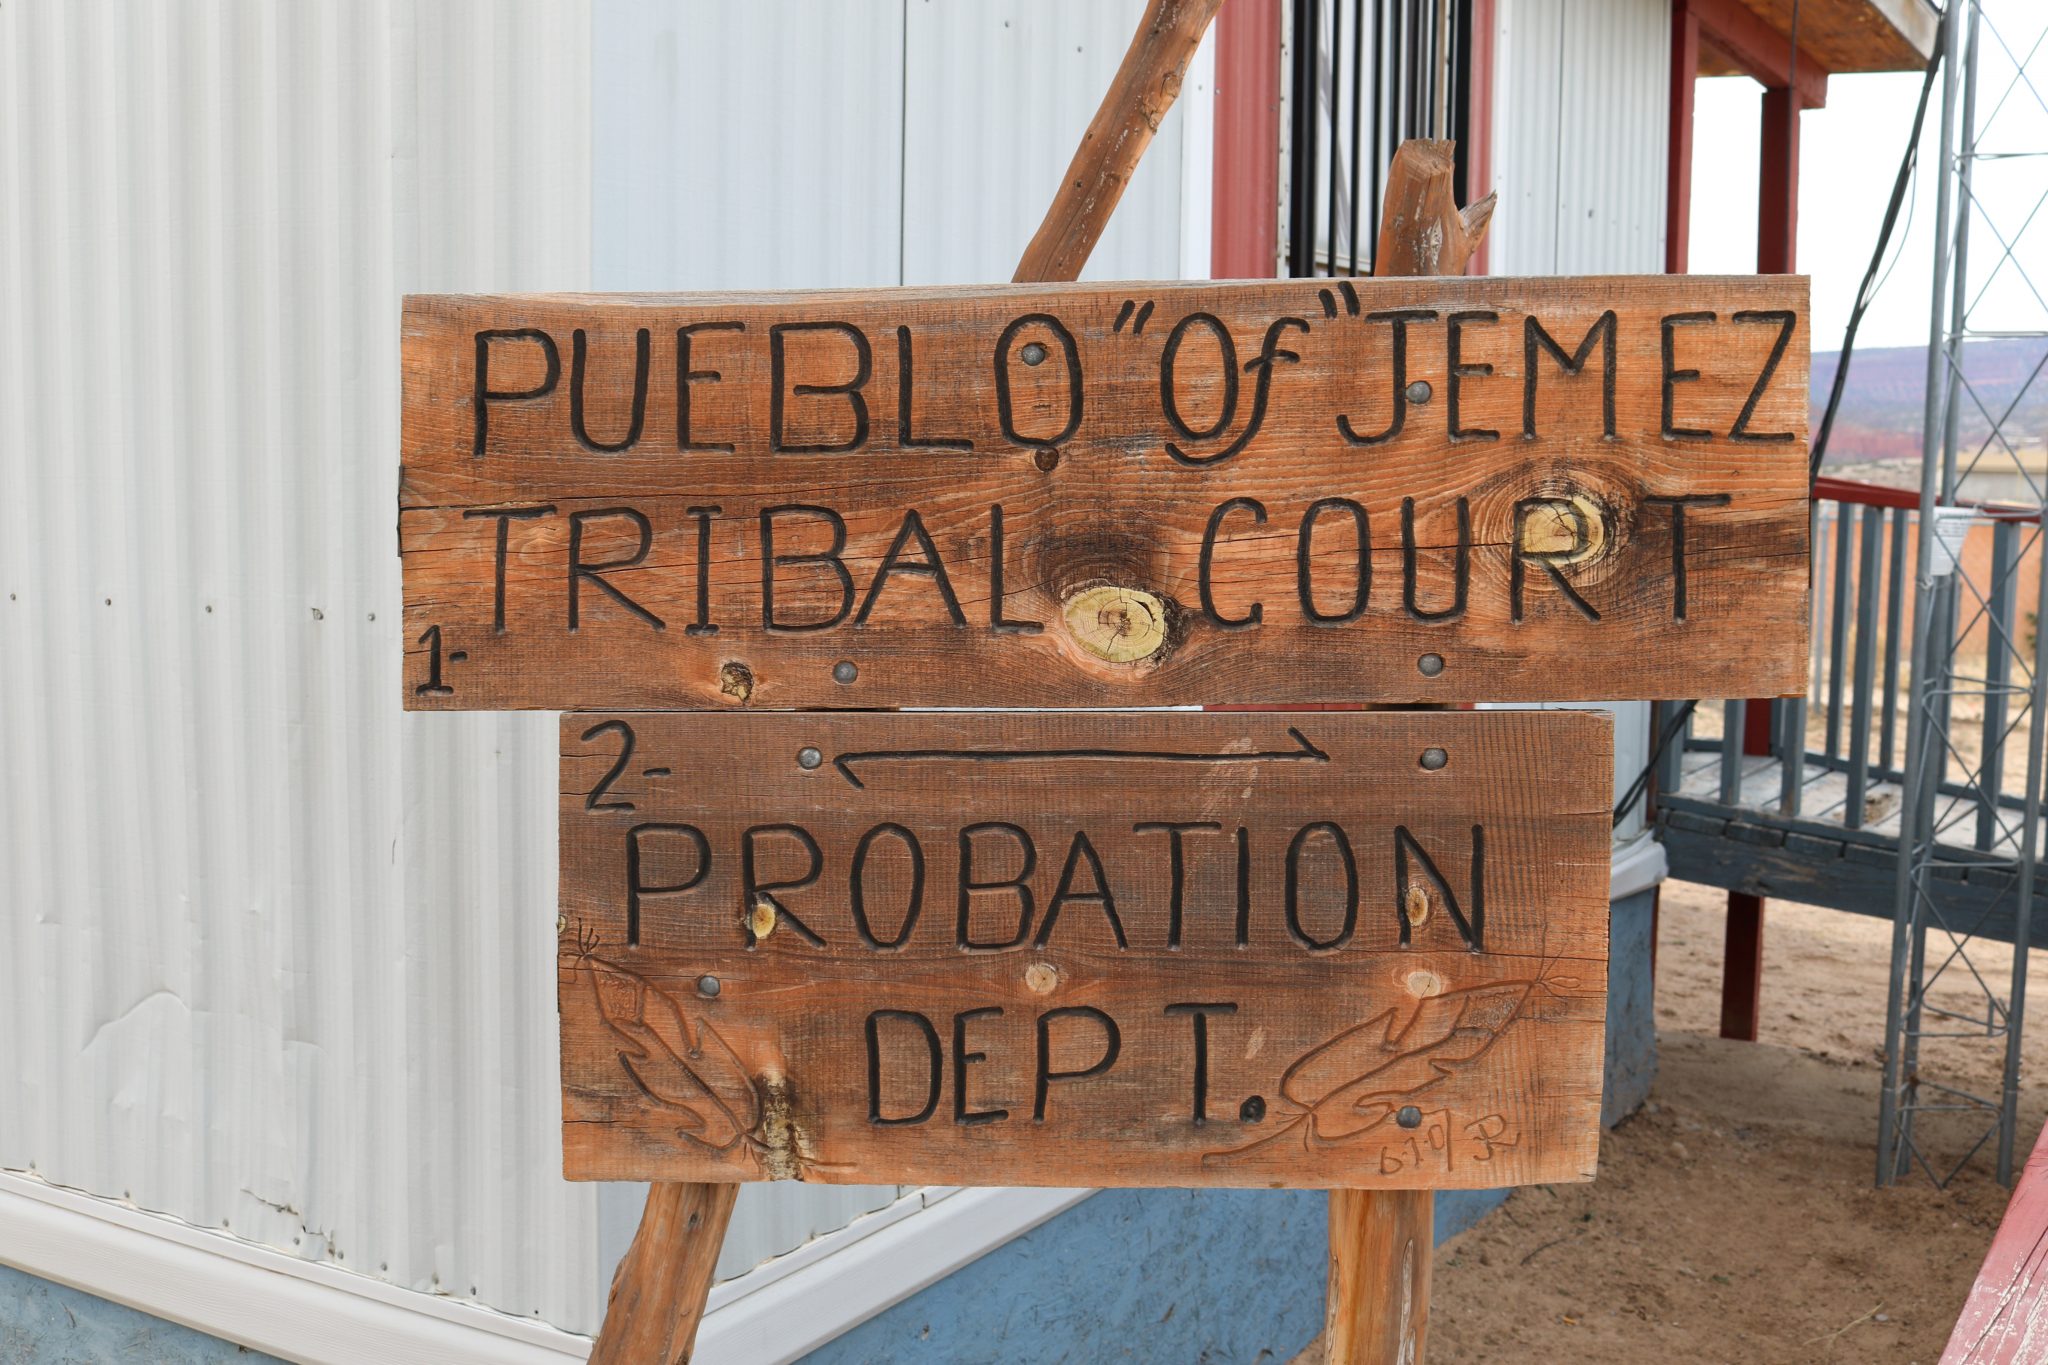 Tribal Court Pueblo of Jemez